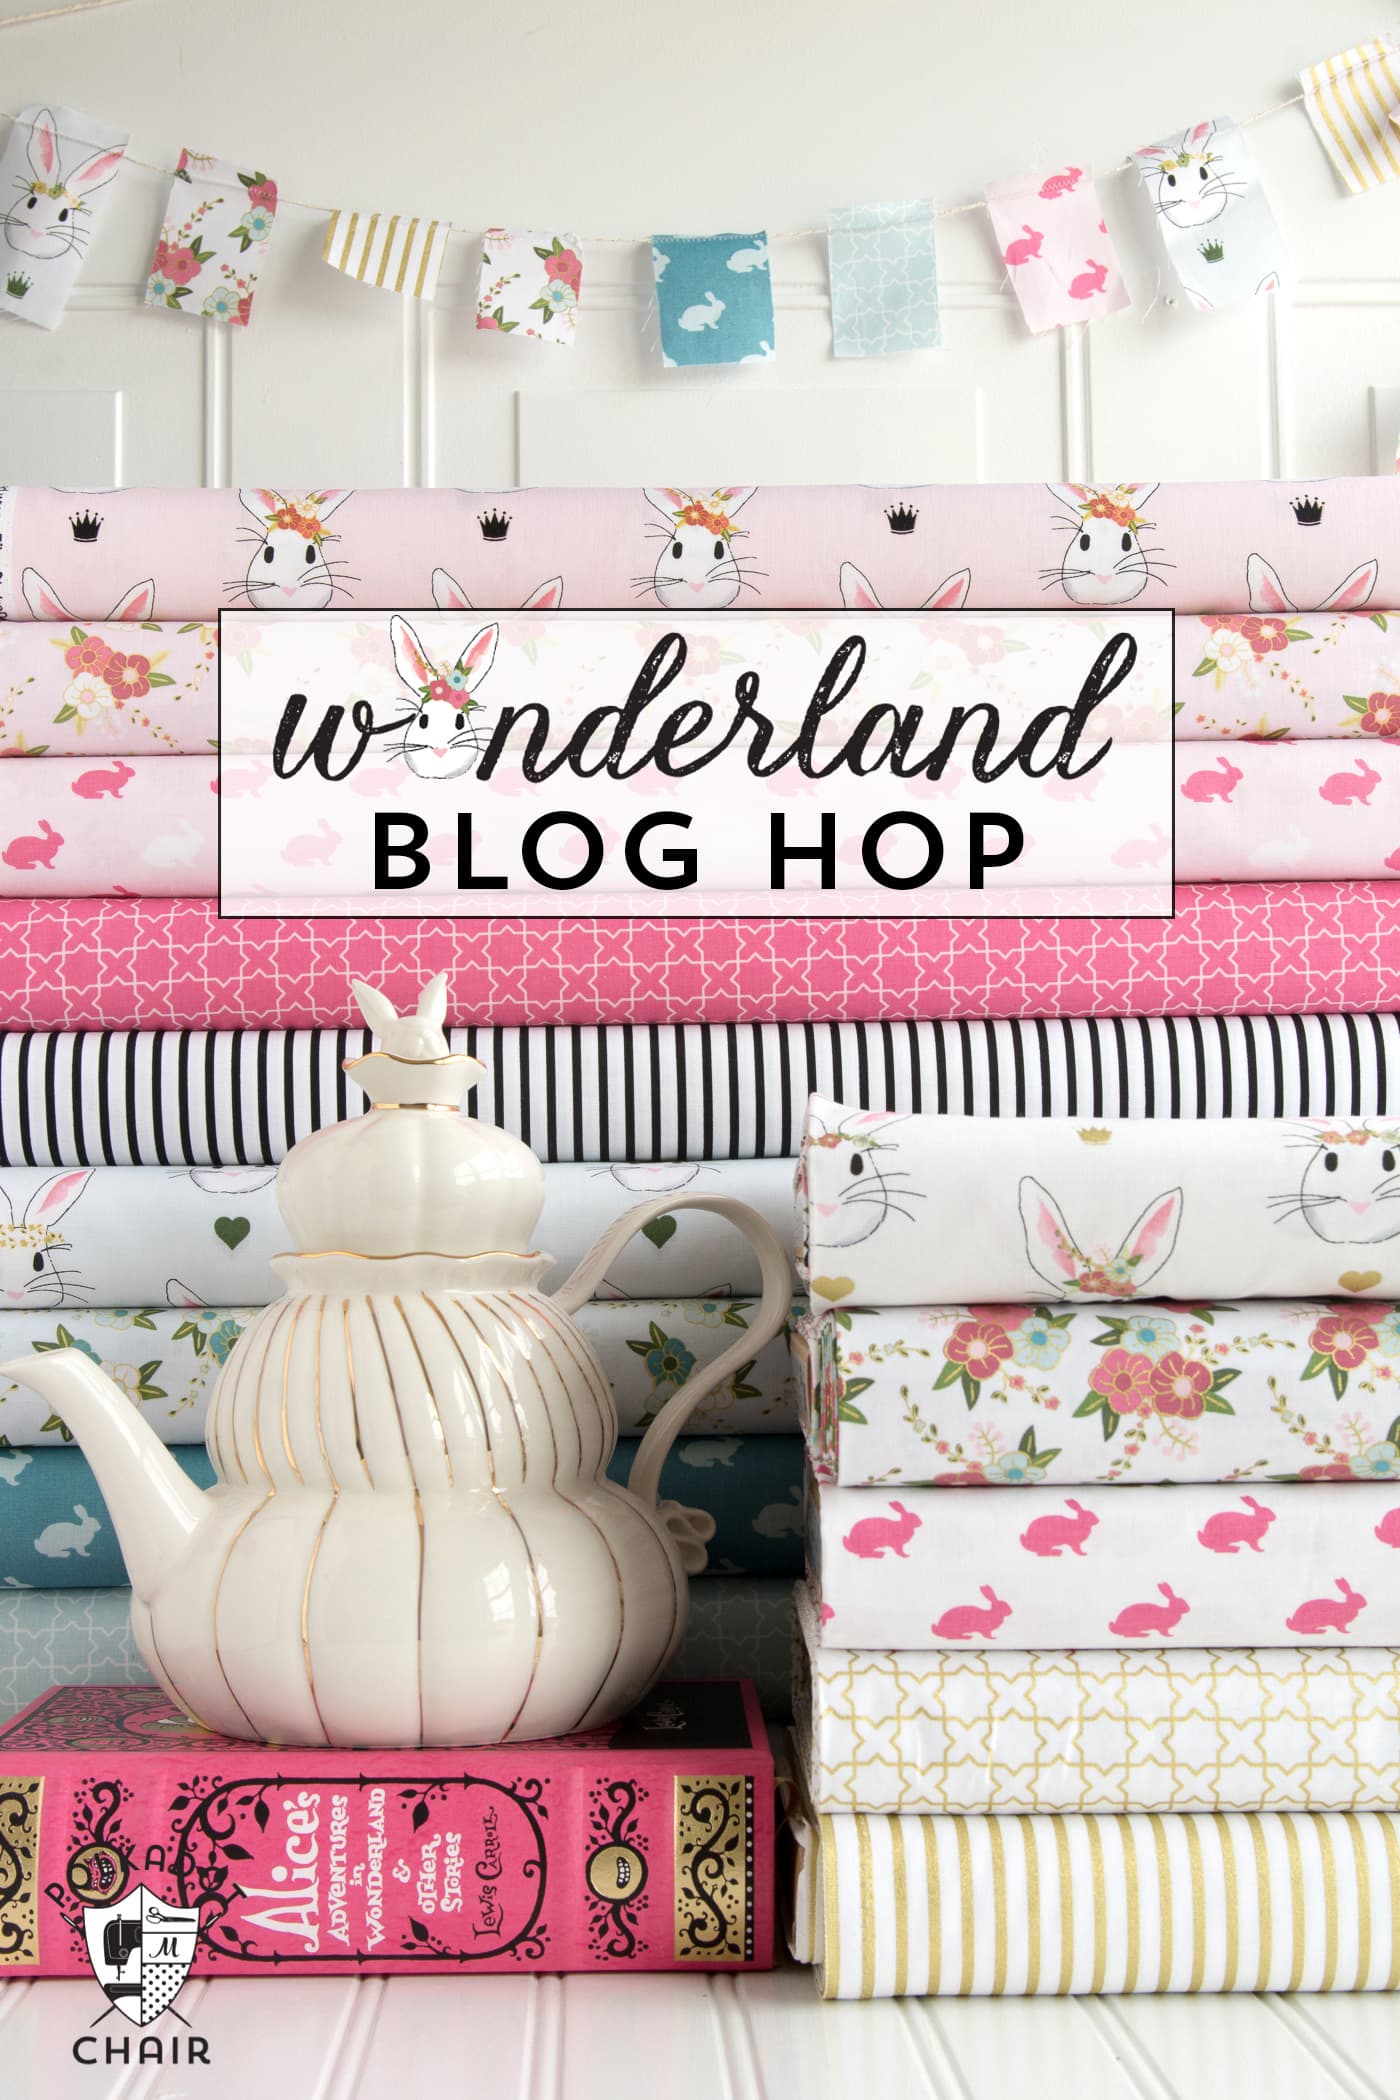 Une visite guidée du blog pleine de bonnes idées utilisant Wonderland Fabric. Patrons de couture, projets et idées de bricolage pour le printemps et Pâques !